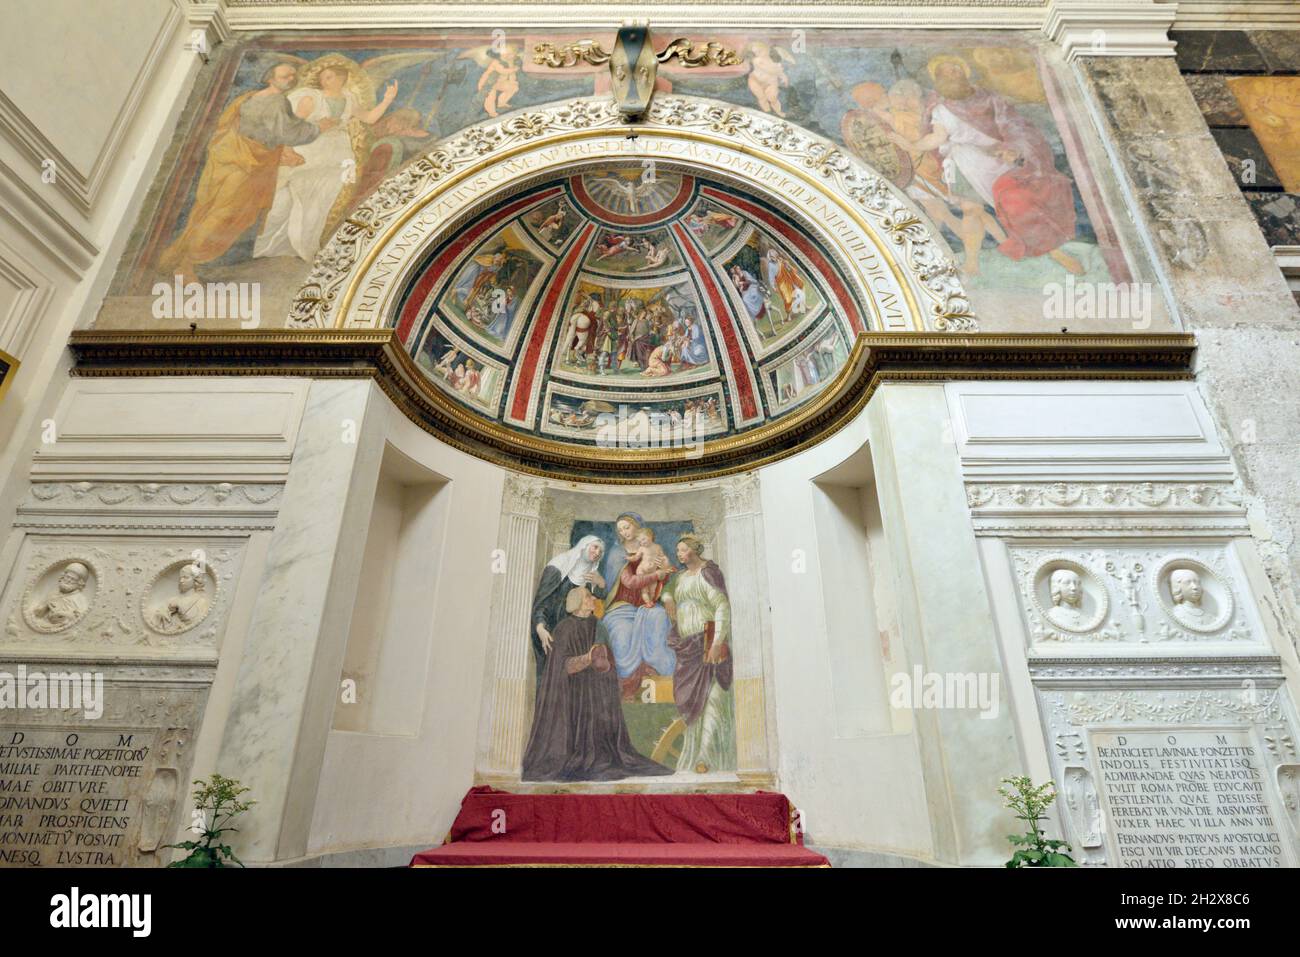 Italie, Rome, église Santa Maria della Pace, Cappella Ponzetti avec fresques de Baldassarre Peruzzi Banque D'Images